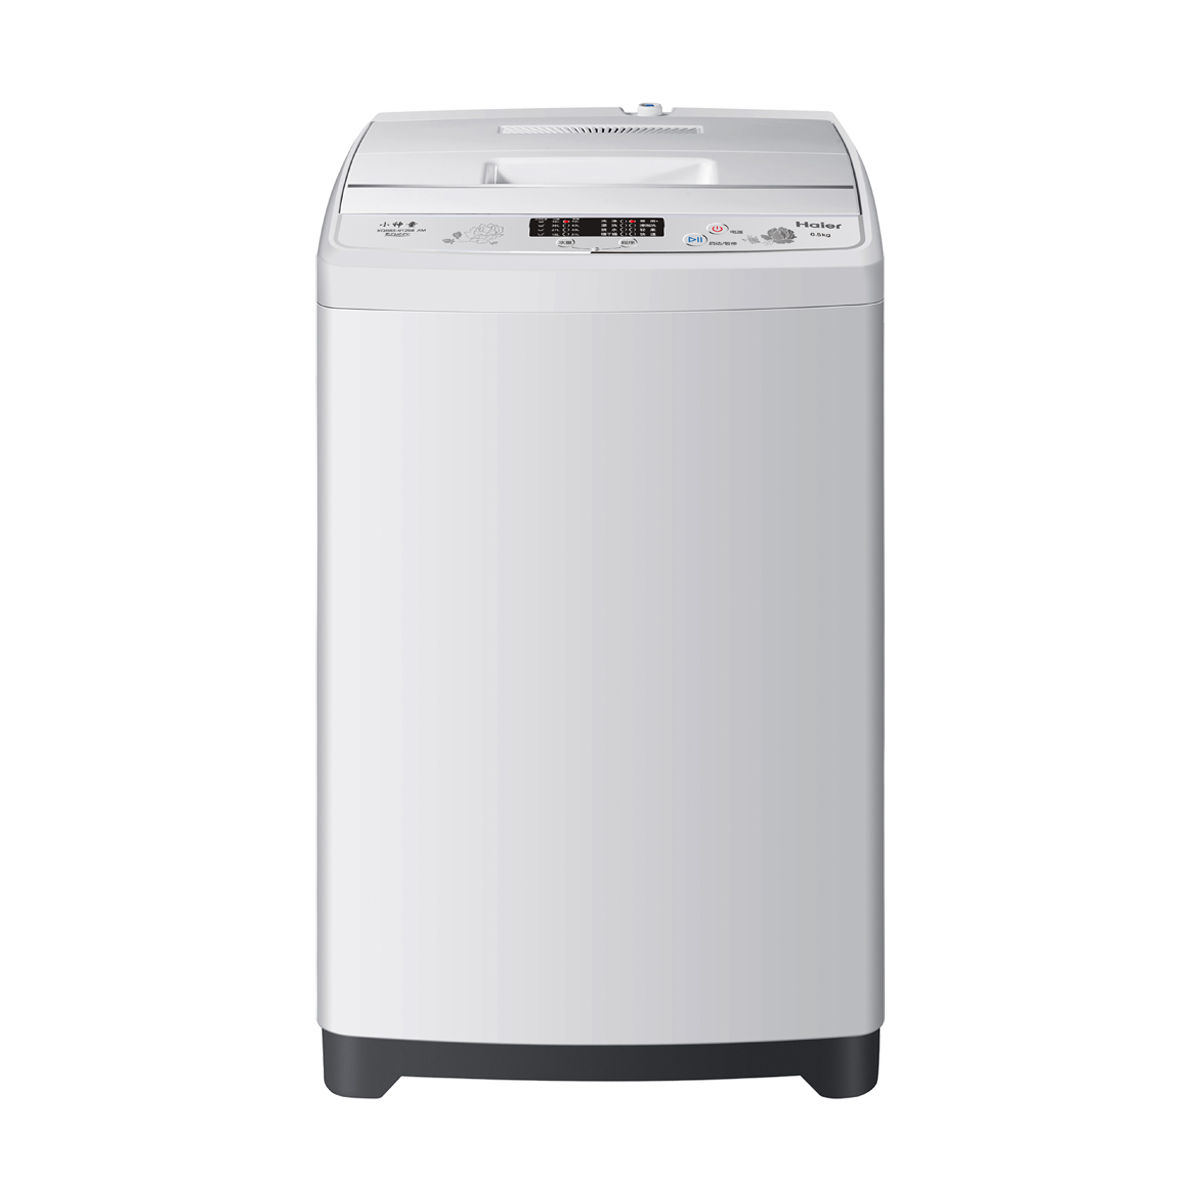 海尔Haier洗衣机 XQB65-M1268(AM) 说明书